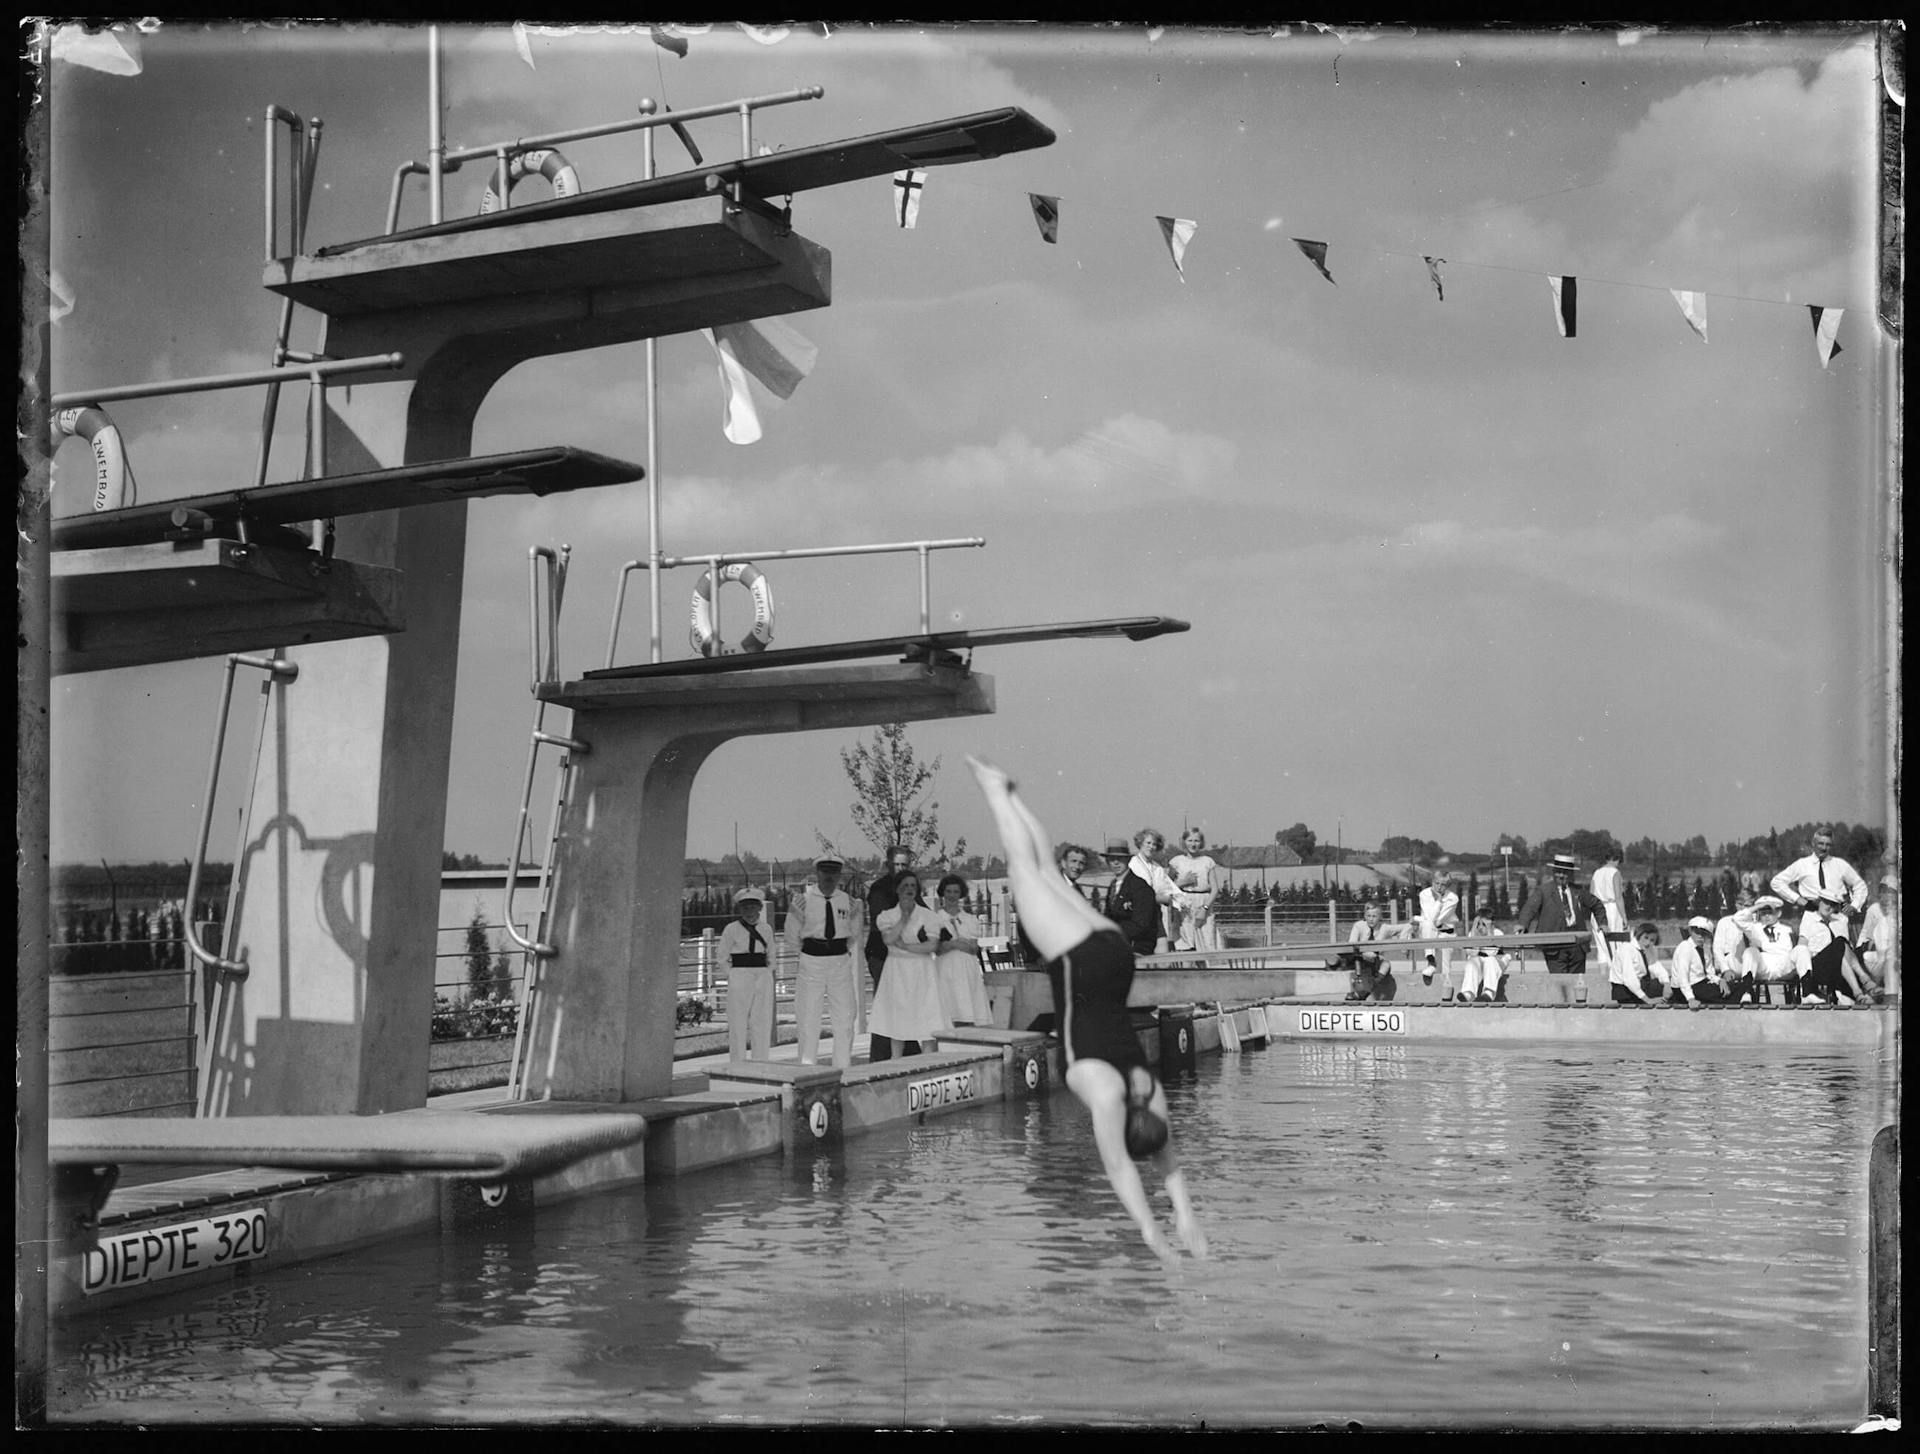 J. Wiebenga. Openluchtzwembad Zwolle. Fotograaf onbekend. Collectie Het Nieuwe Instituut 